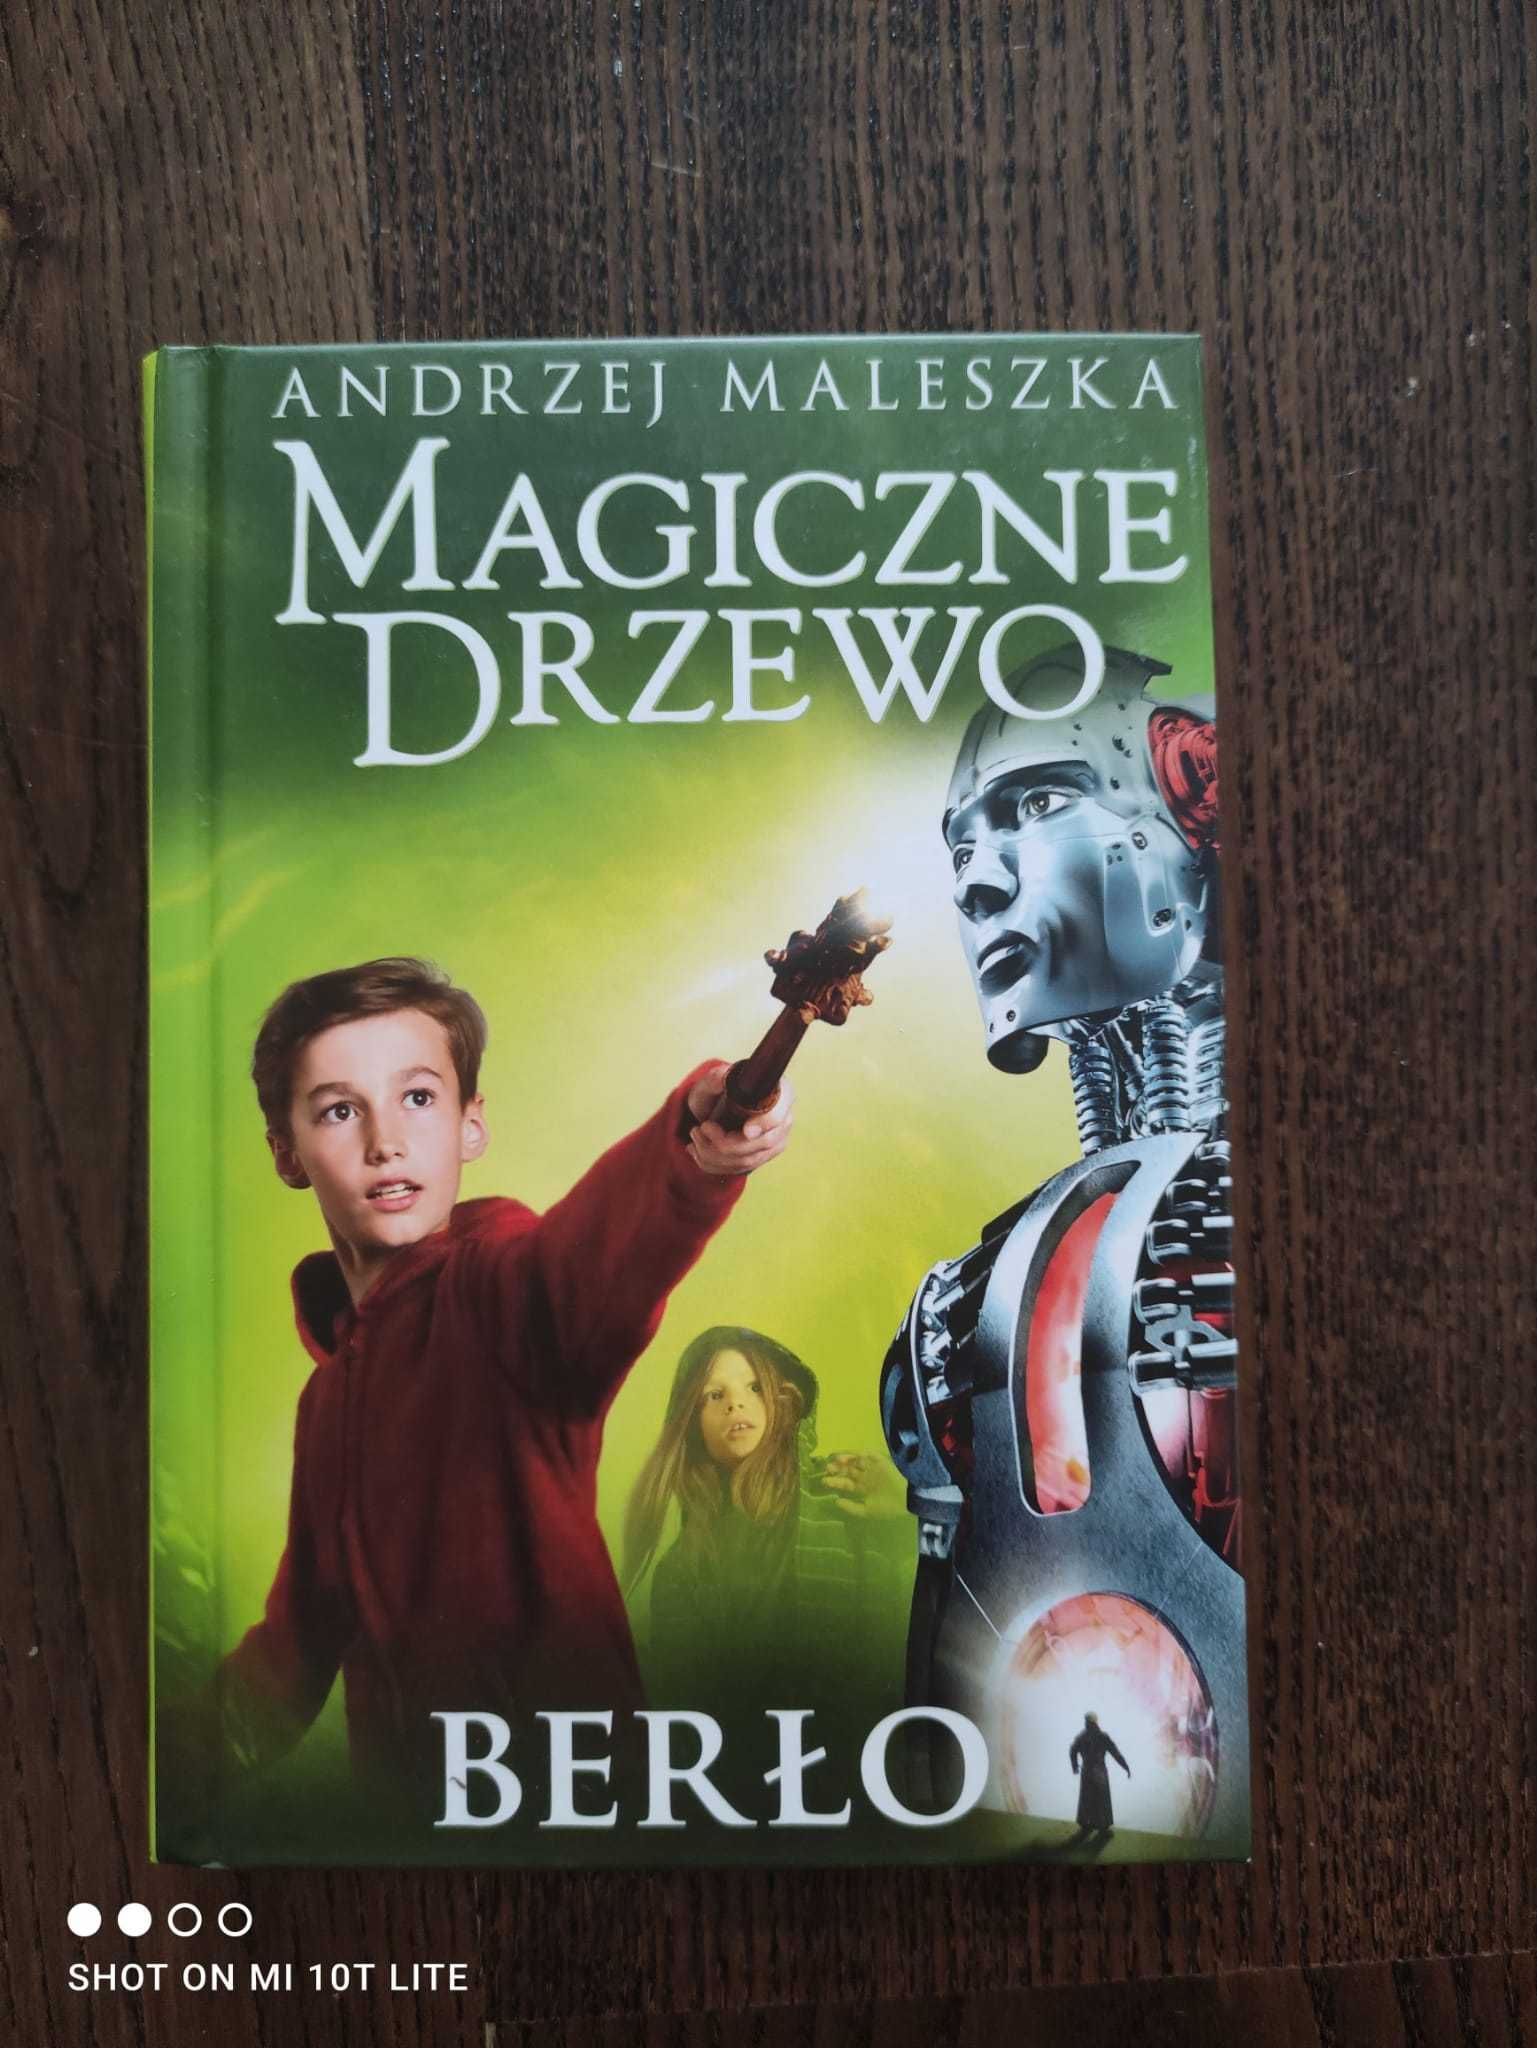 Magiczne drzewo -Berło Andrzej Maleszka